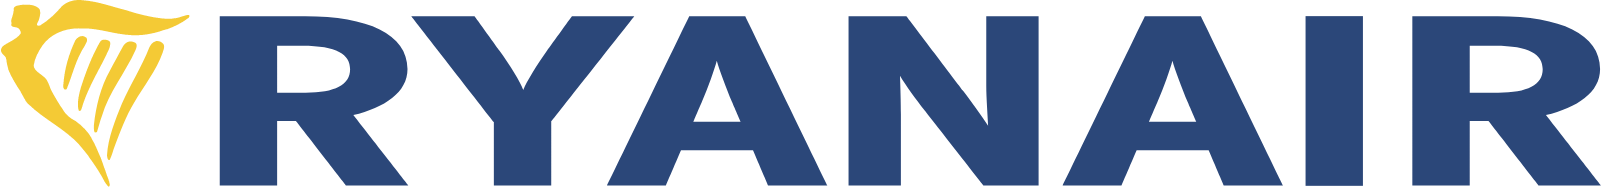 Ryanair logo large (transparent PNG)